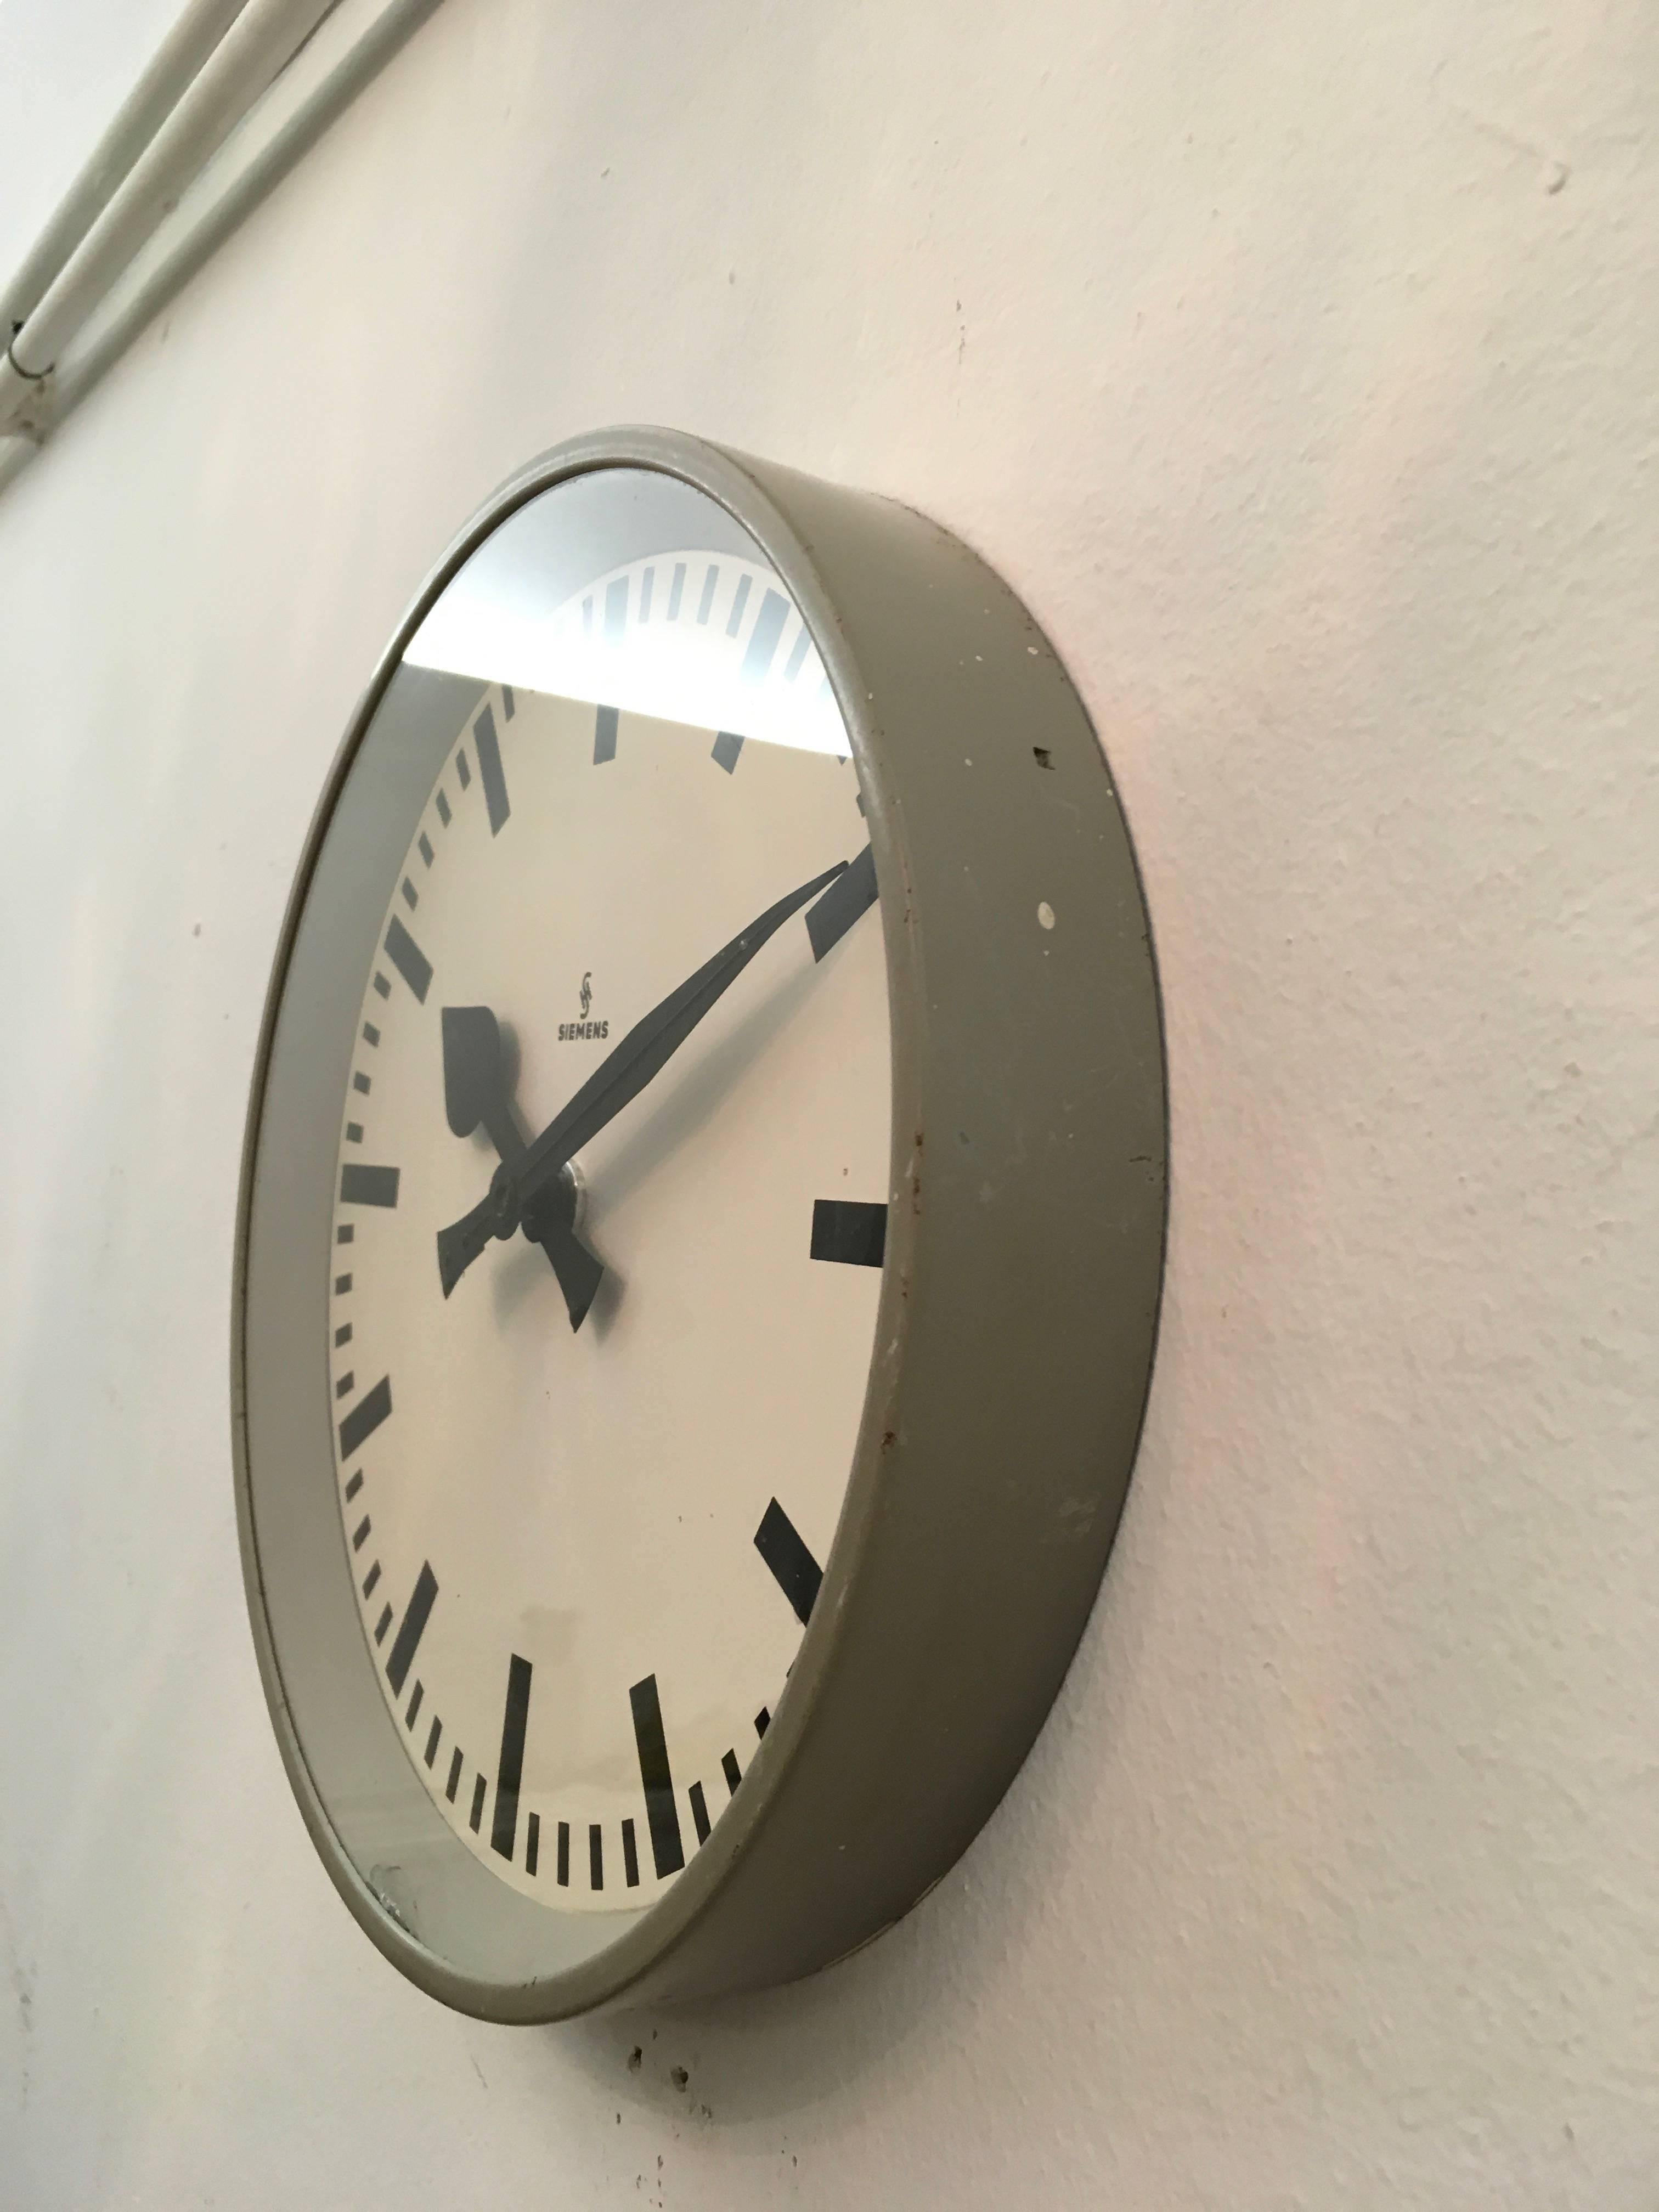 Siemens Factory or Workshop Wall Clock 2